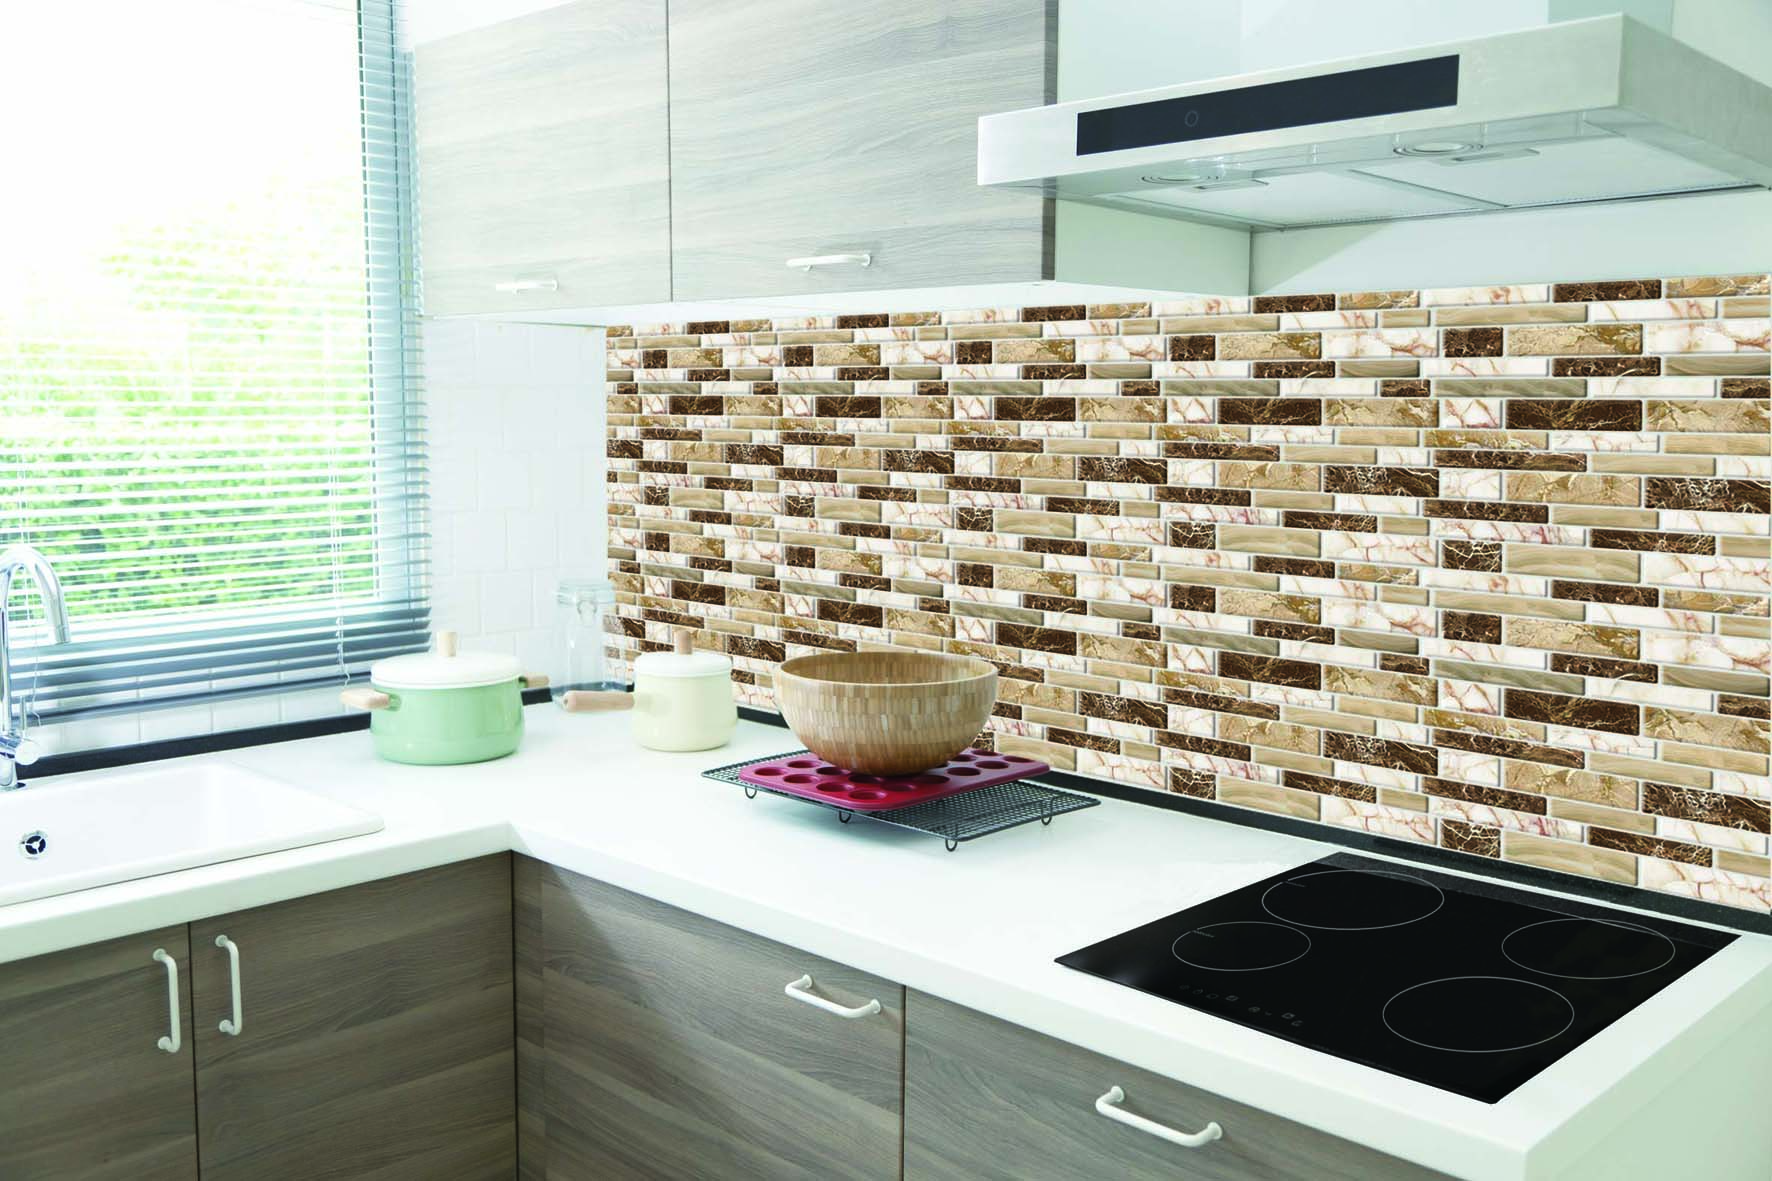 Long King Peel and Stick Tile Backsplash for Kitchen in Marble Design Sheets - 1